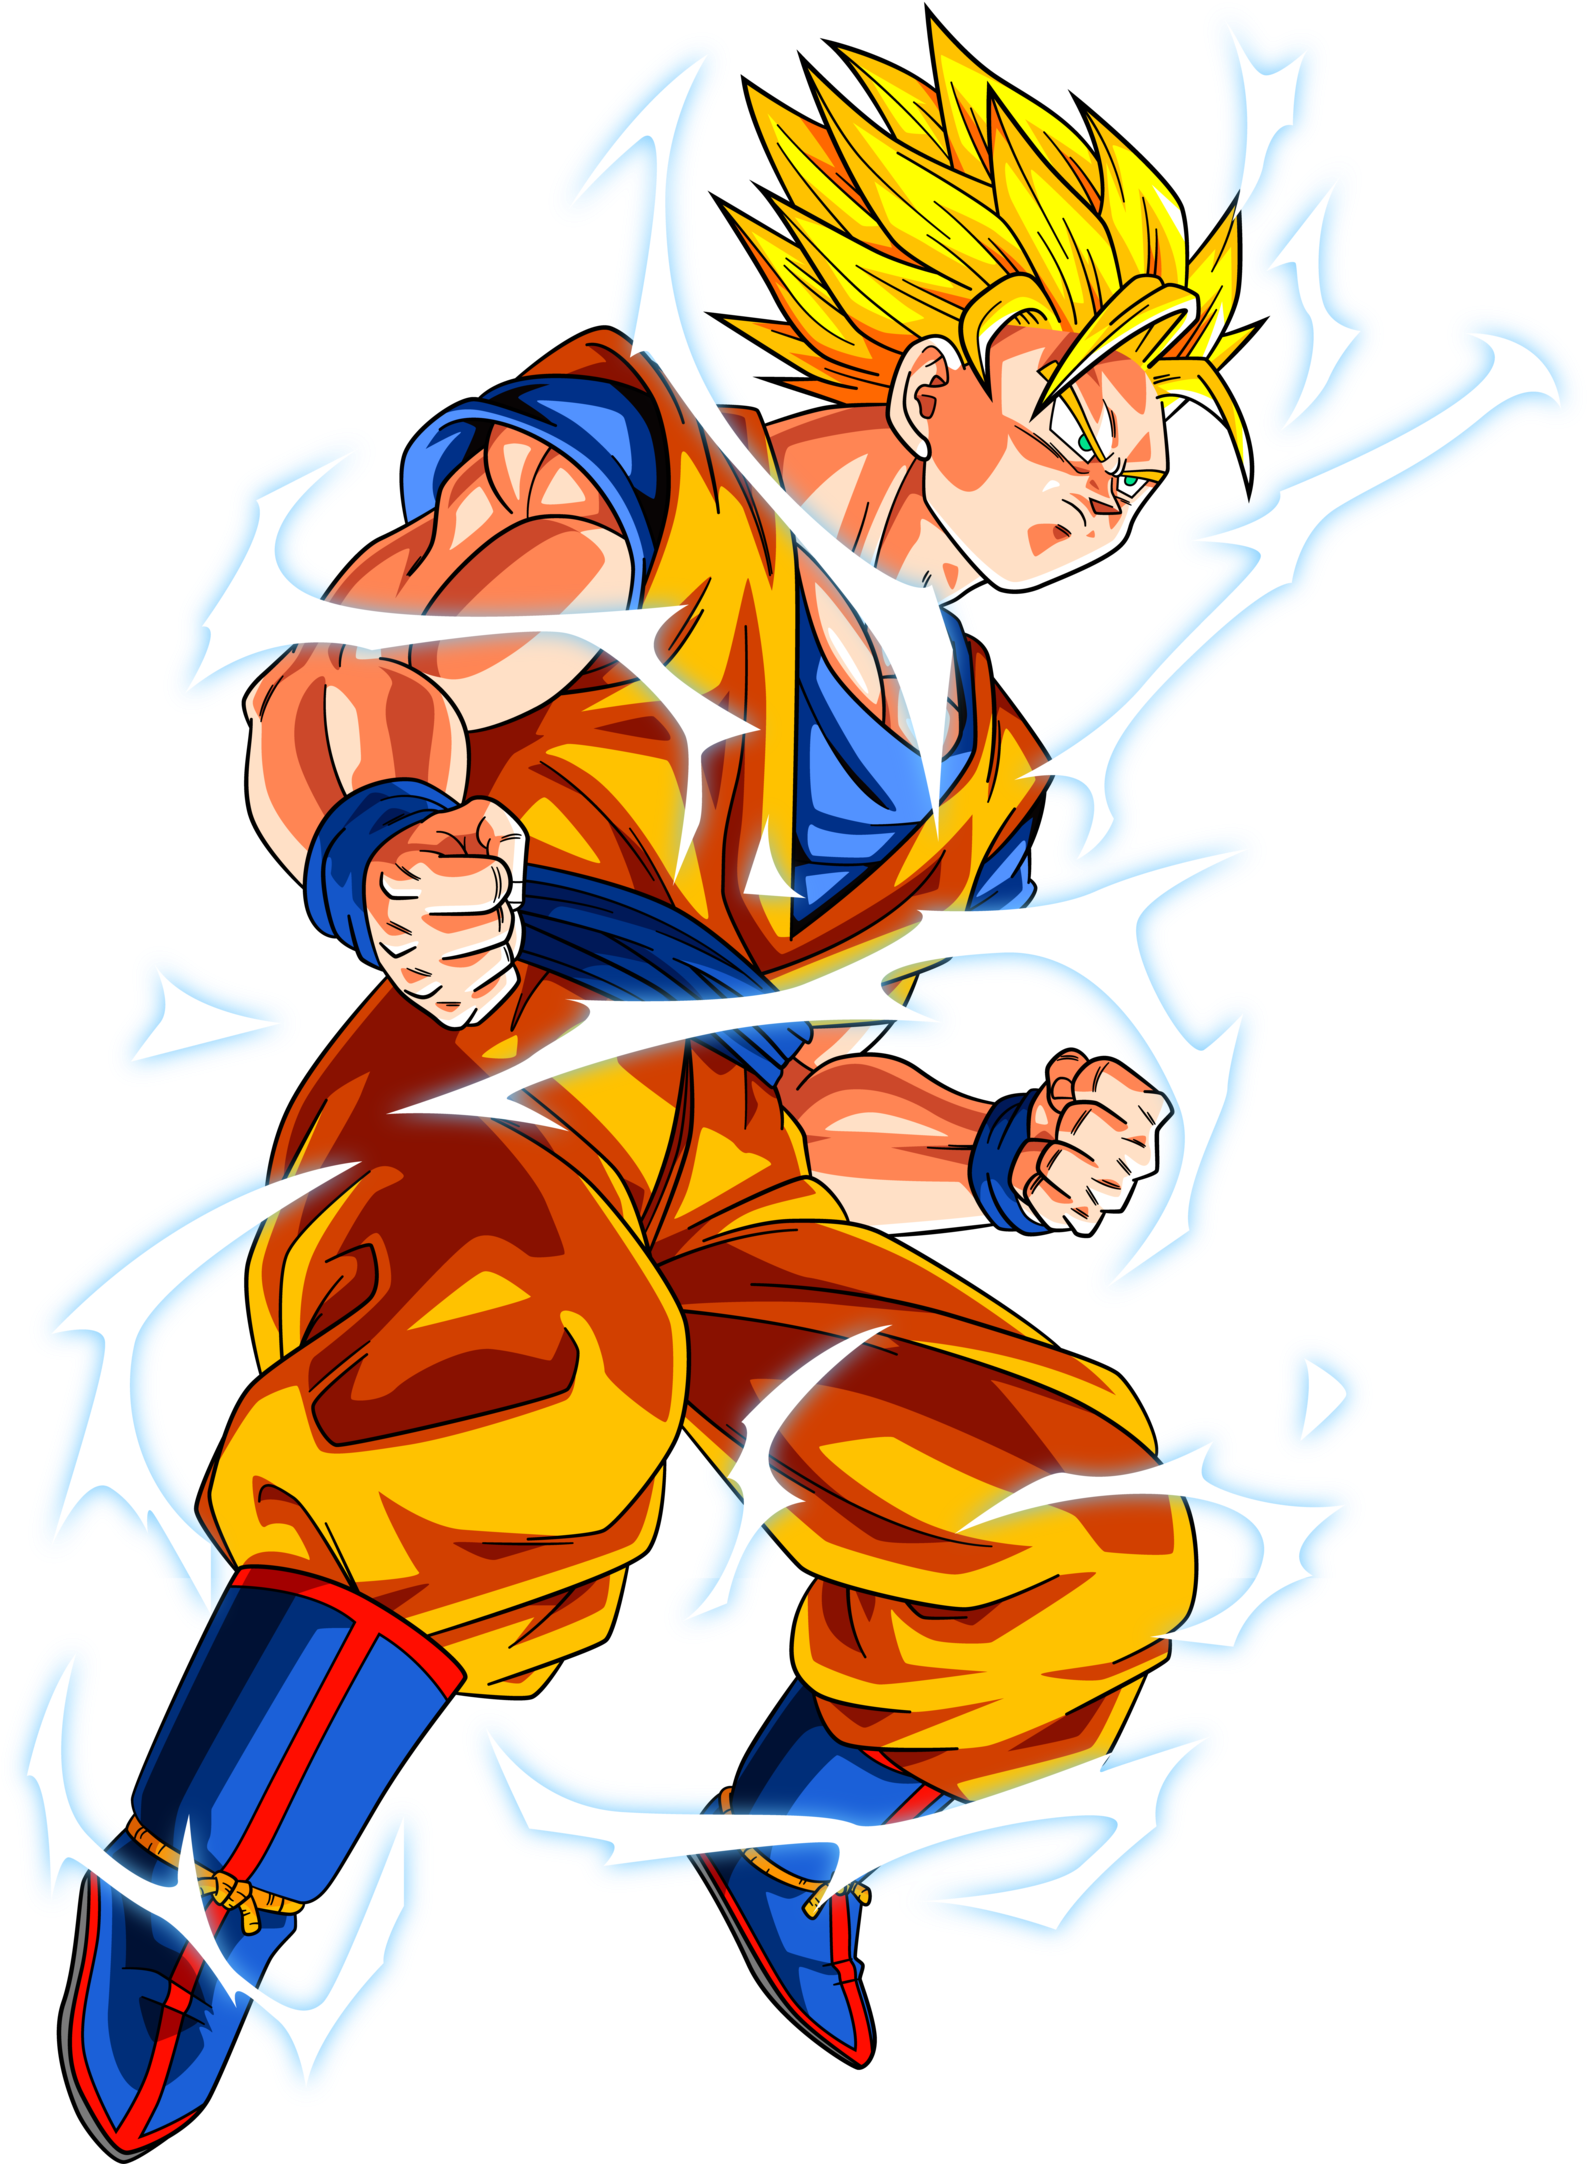 Super Saiyan 2 Goku Png - Goku Super Saiyan 2 Art Clipart (1587x2164), Png Download